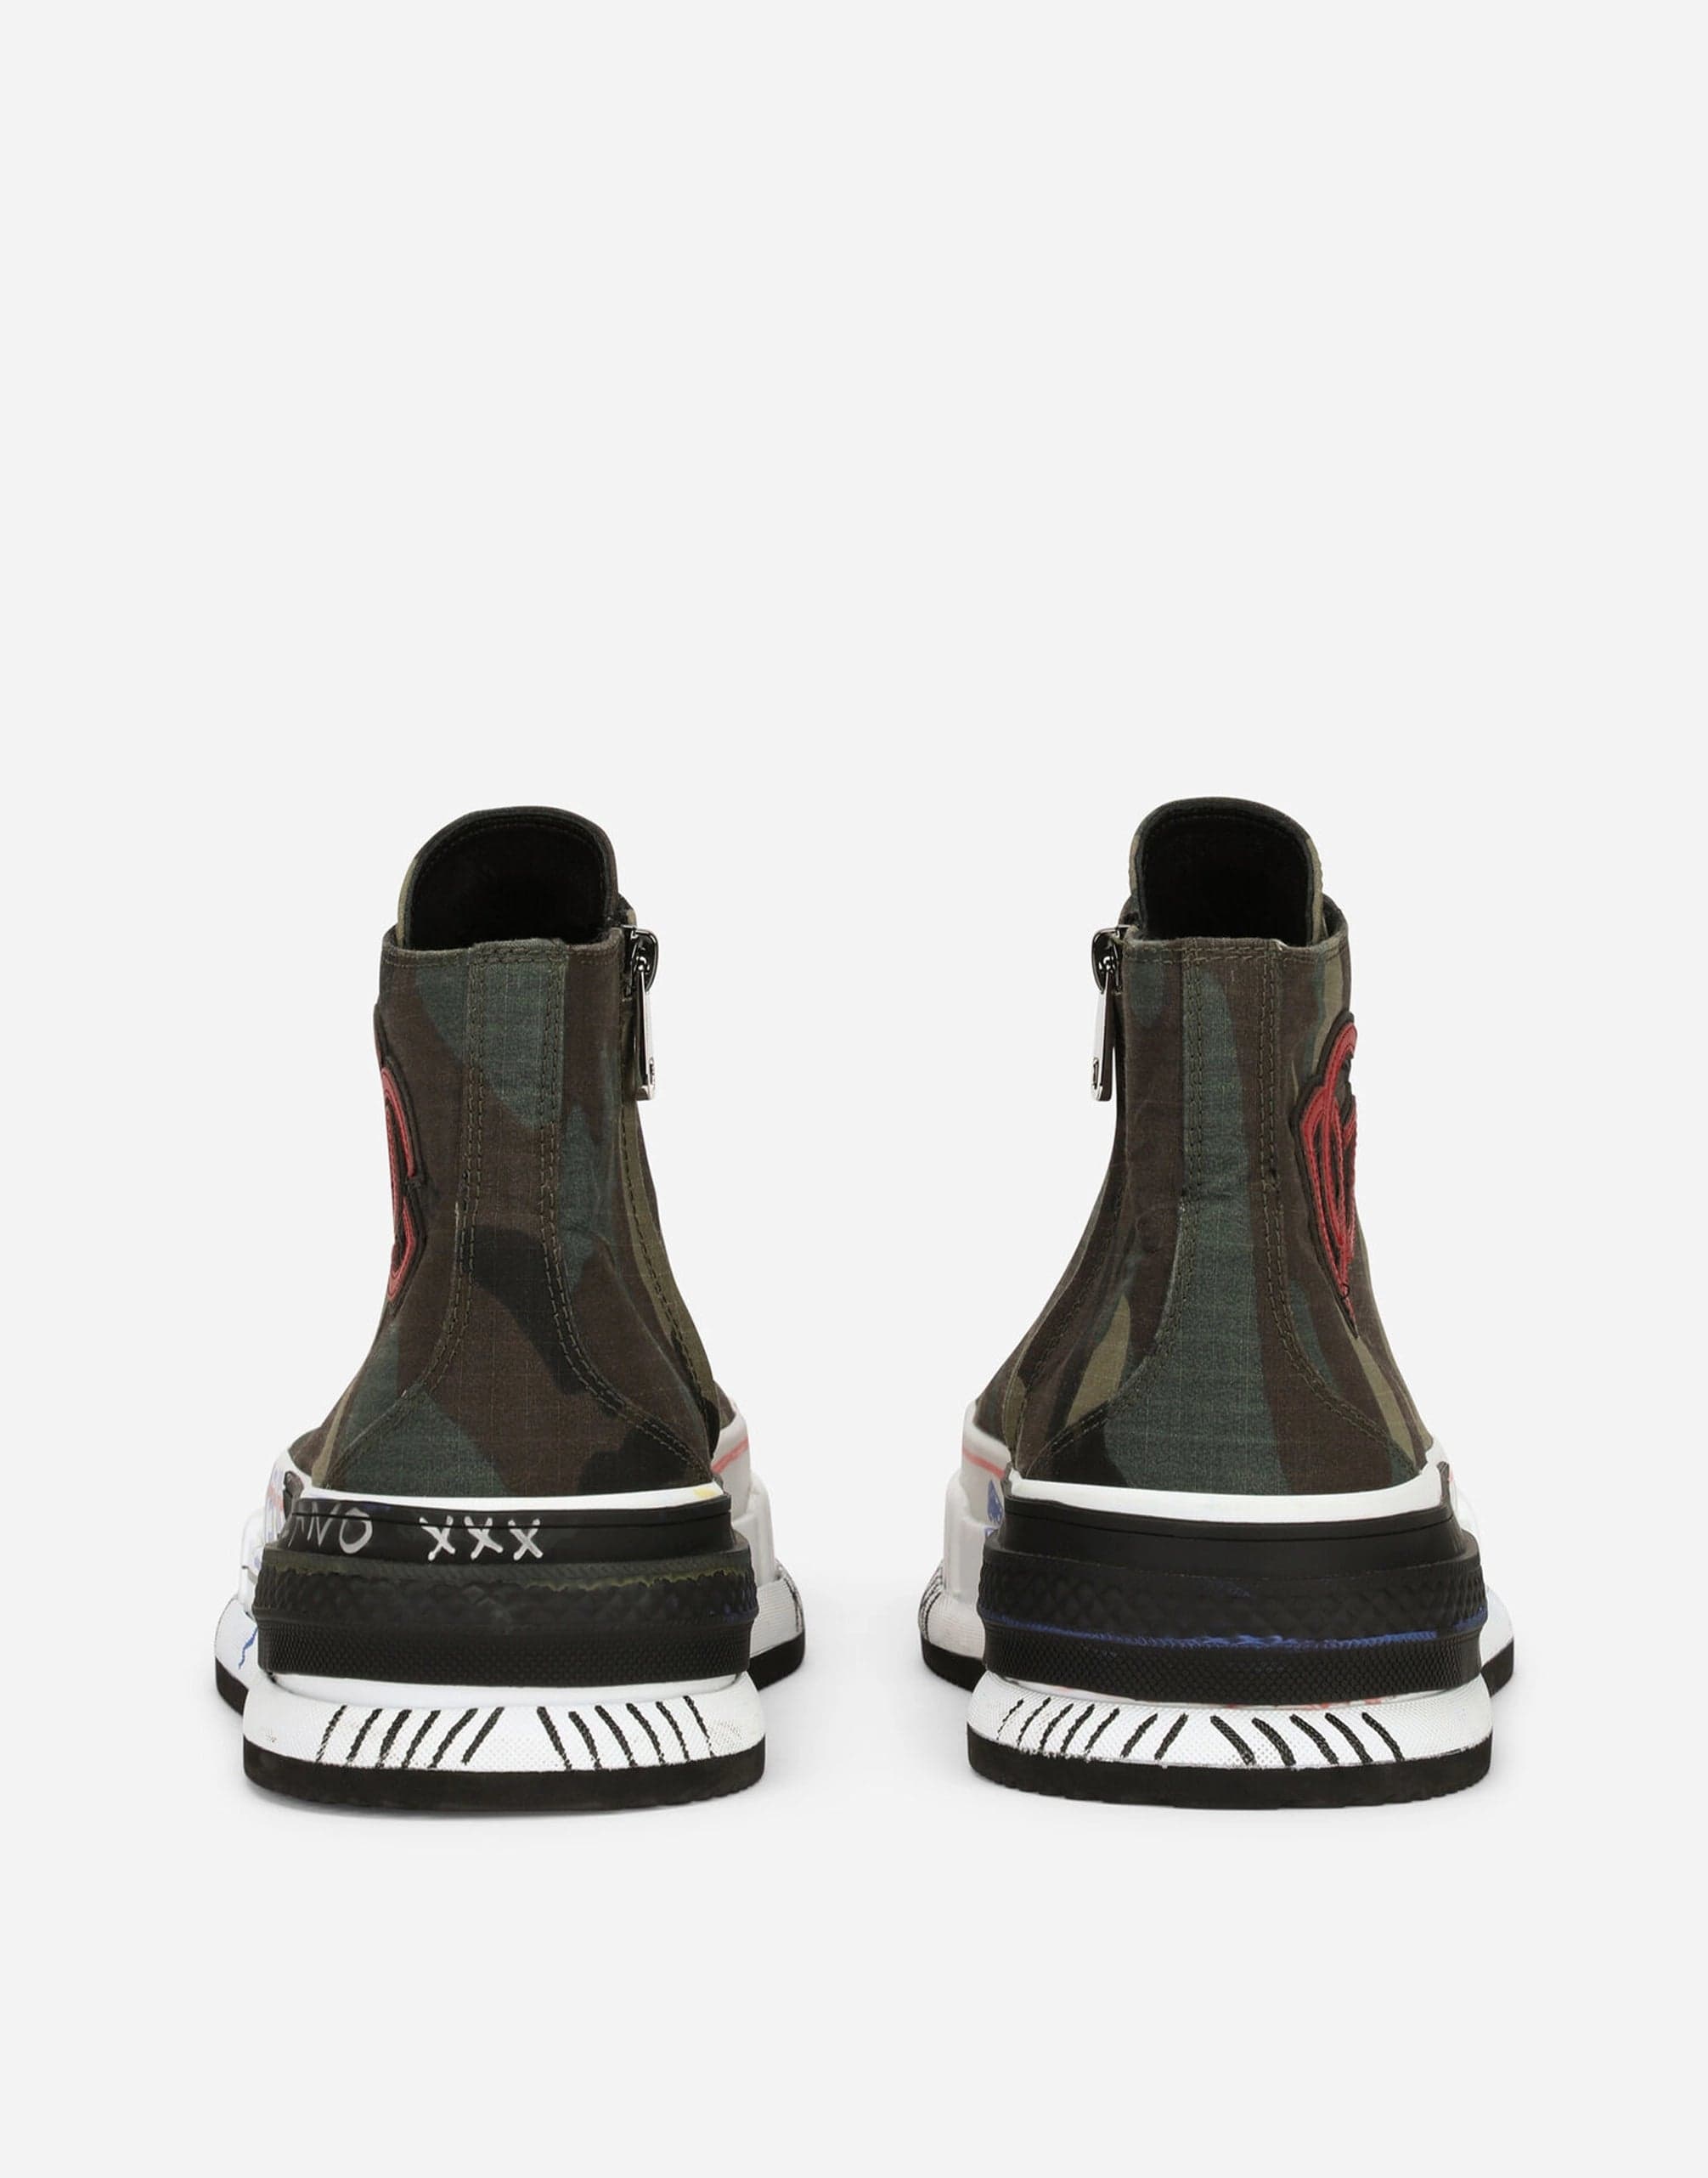 حذاء بورتوفينو الرياضي الخفيف ذو الرقبة العالية وطبعة مموهة